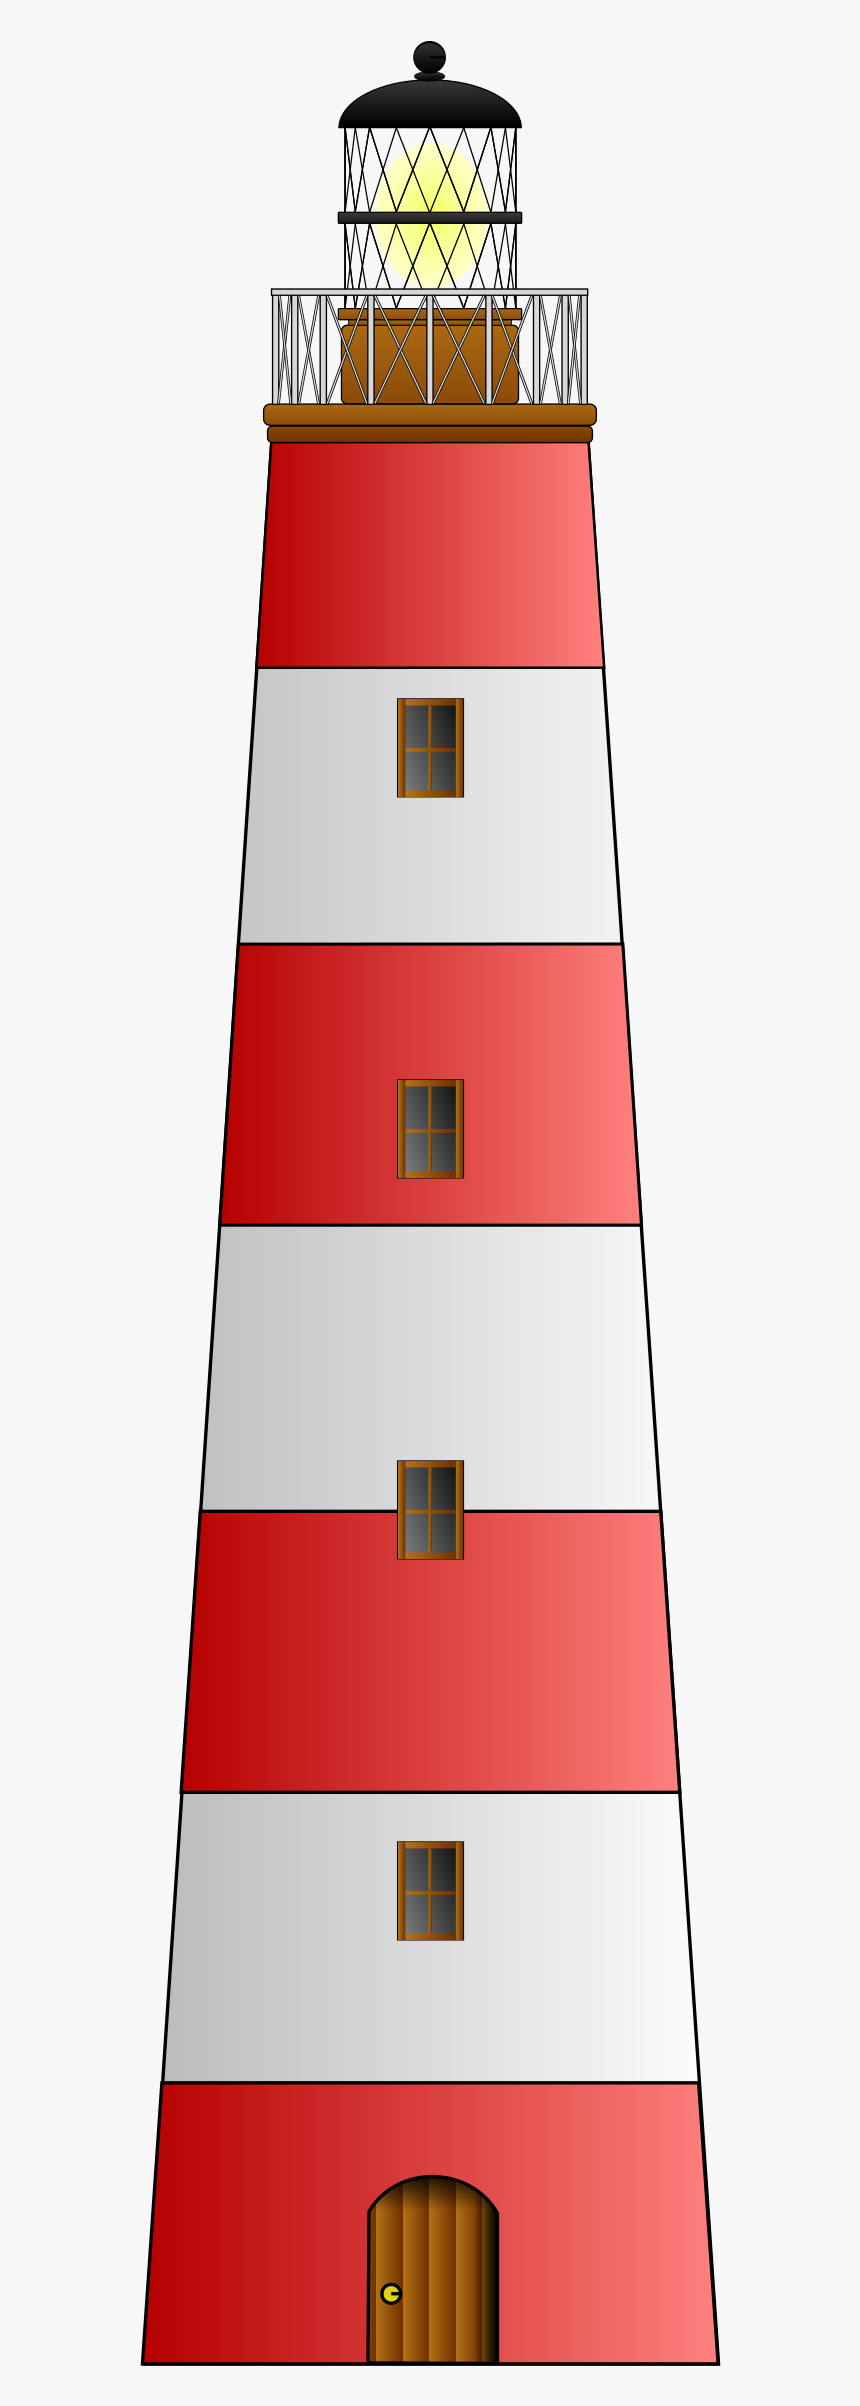 Download Clip Art Lighthouse Svg Lighthouse Clip Art Hd Png Download Kindpng